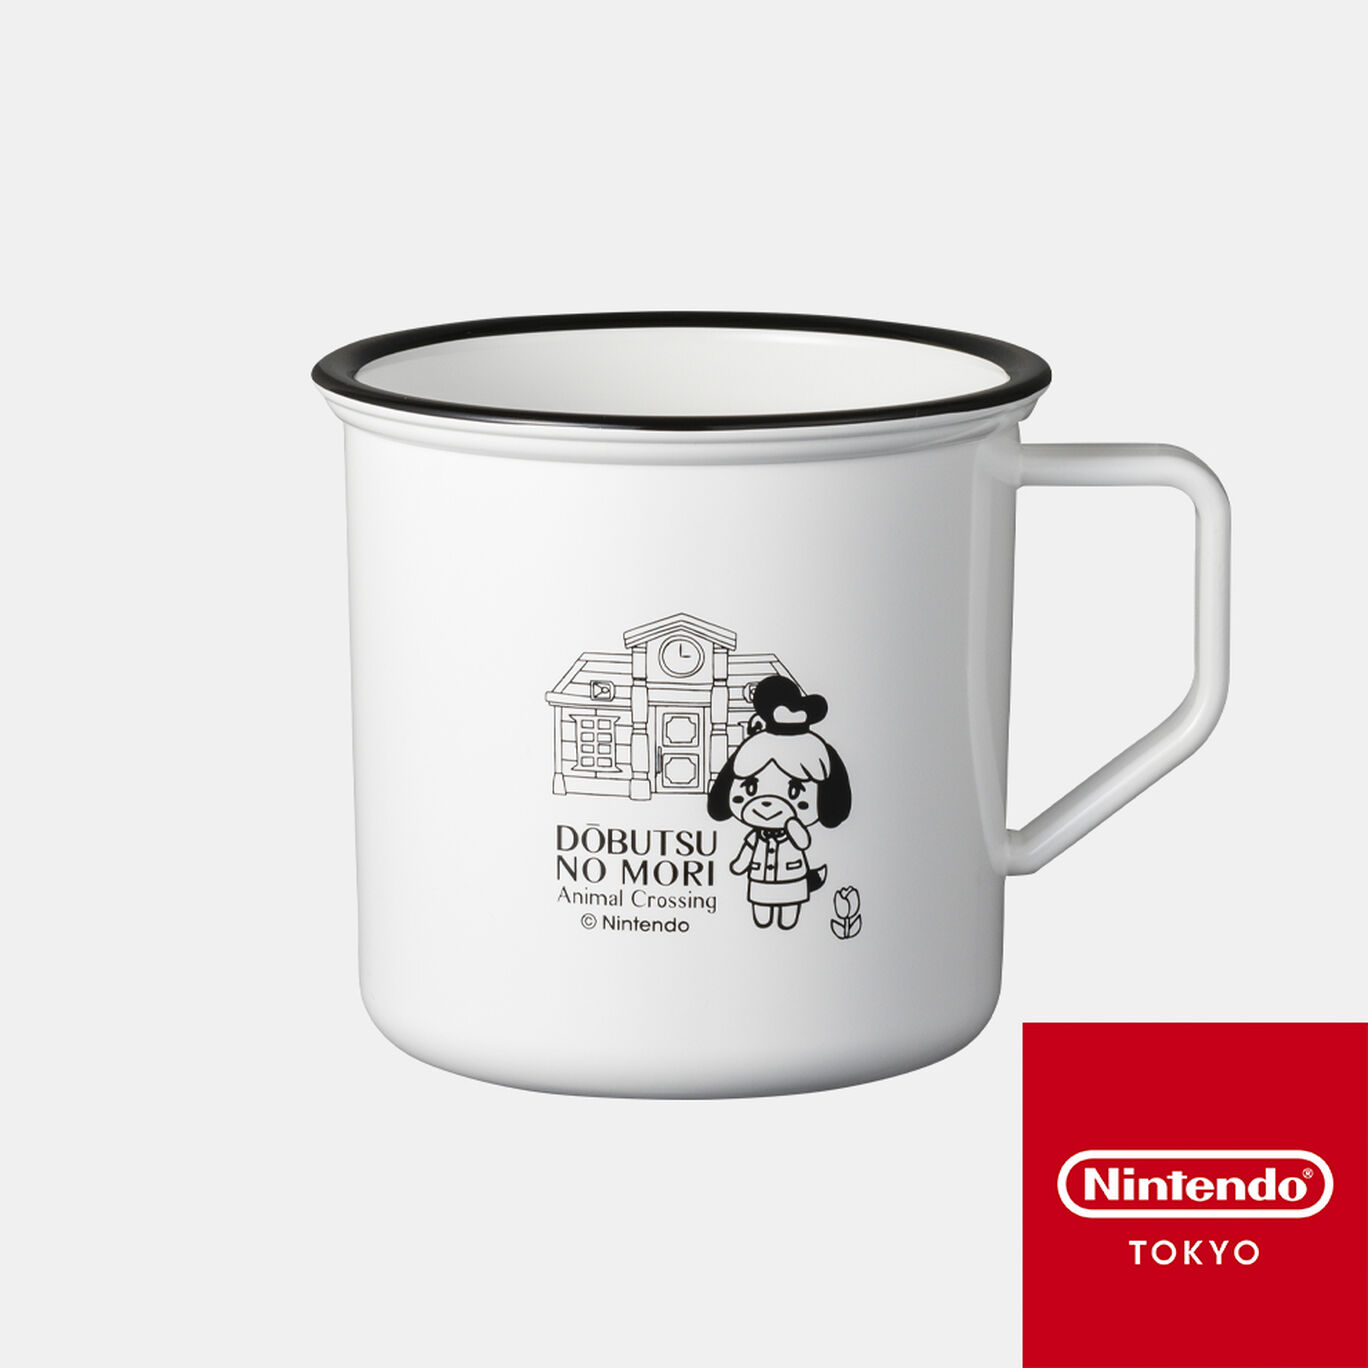 ホーロー風マグカップ どうぶつの森 A【Nintendo TOKYO取り扱い商品】